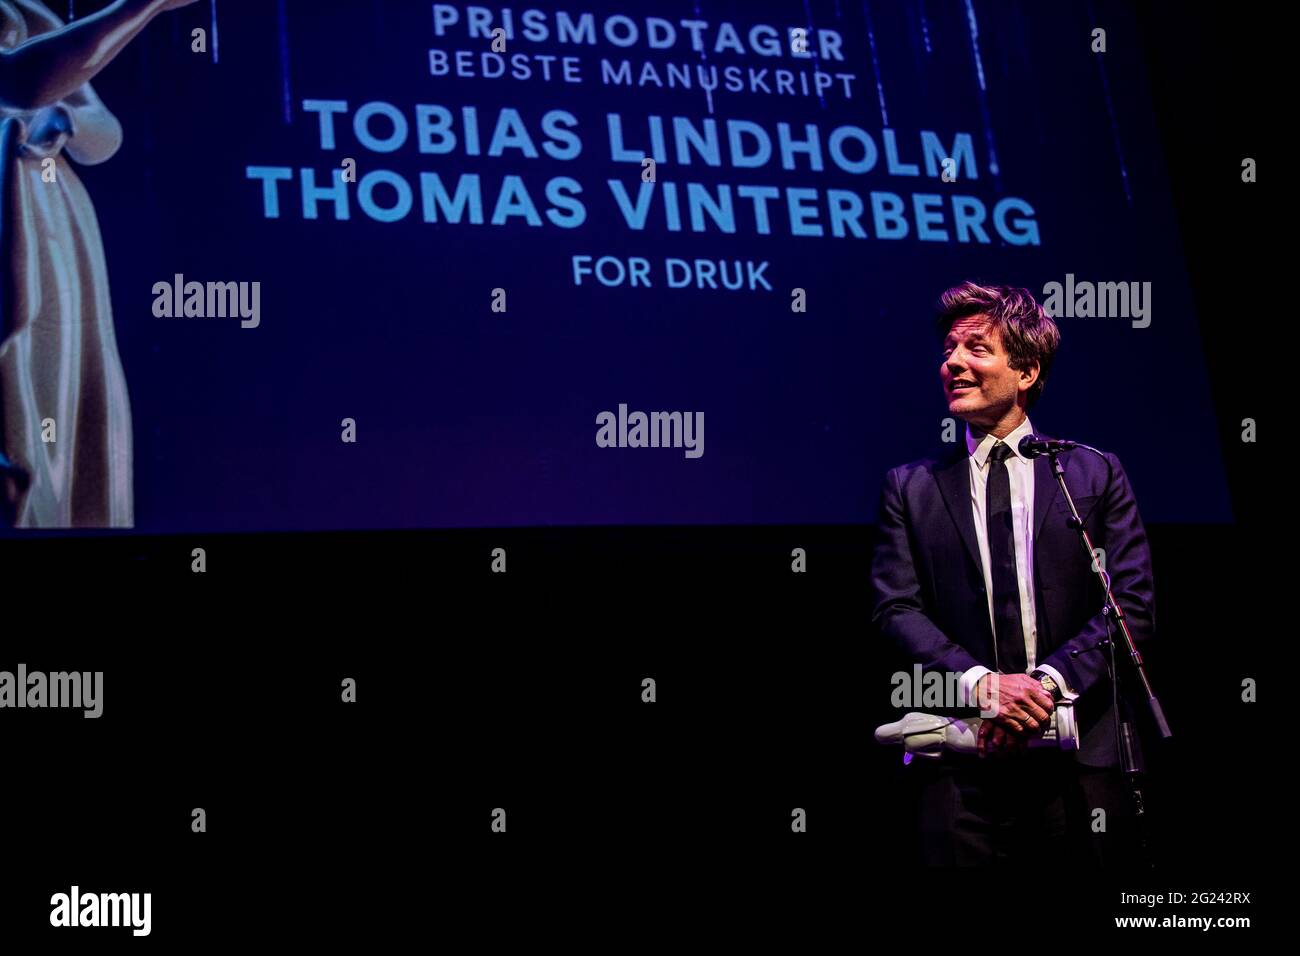 Copenhague, Danemark. 08 mai 2021. Thomas Vinterberg, le réalisateur danois, vu aux Bodil Awards 2021 à Copenhague. (Crédit photo: Gonzales photo - Lasse Lagoni). Banque D'Images